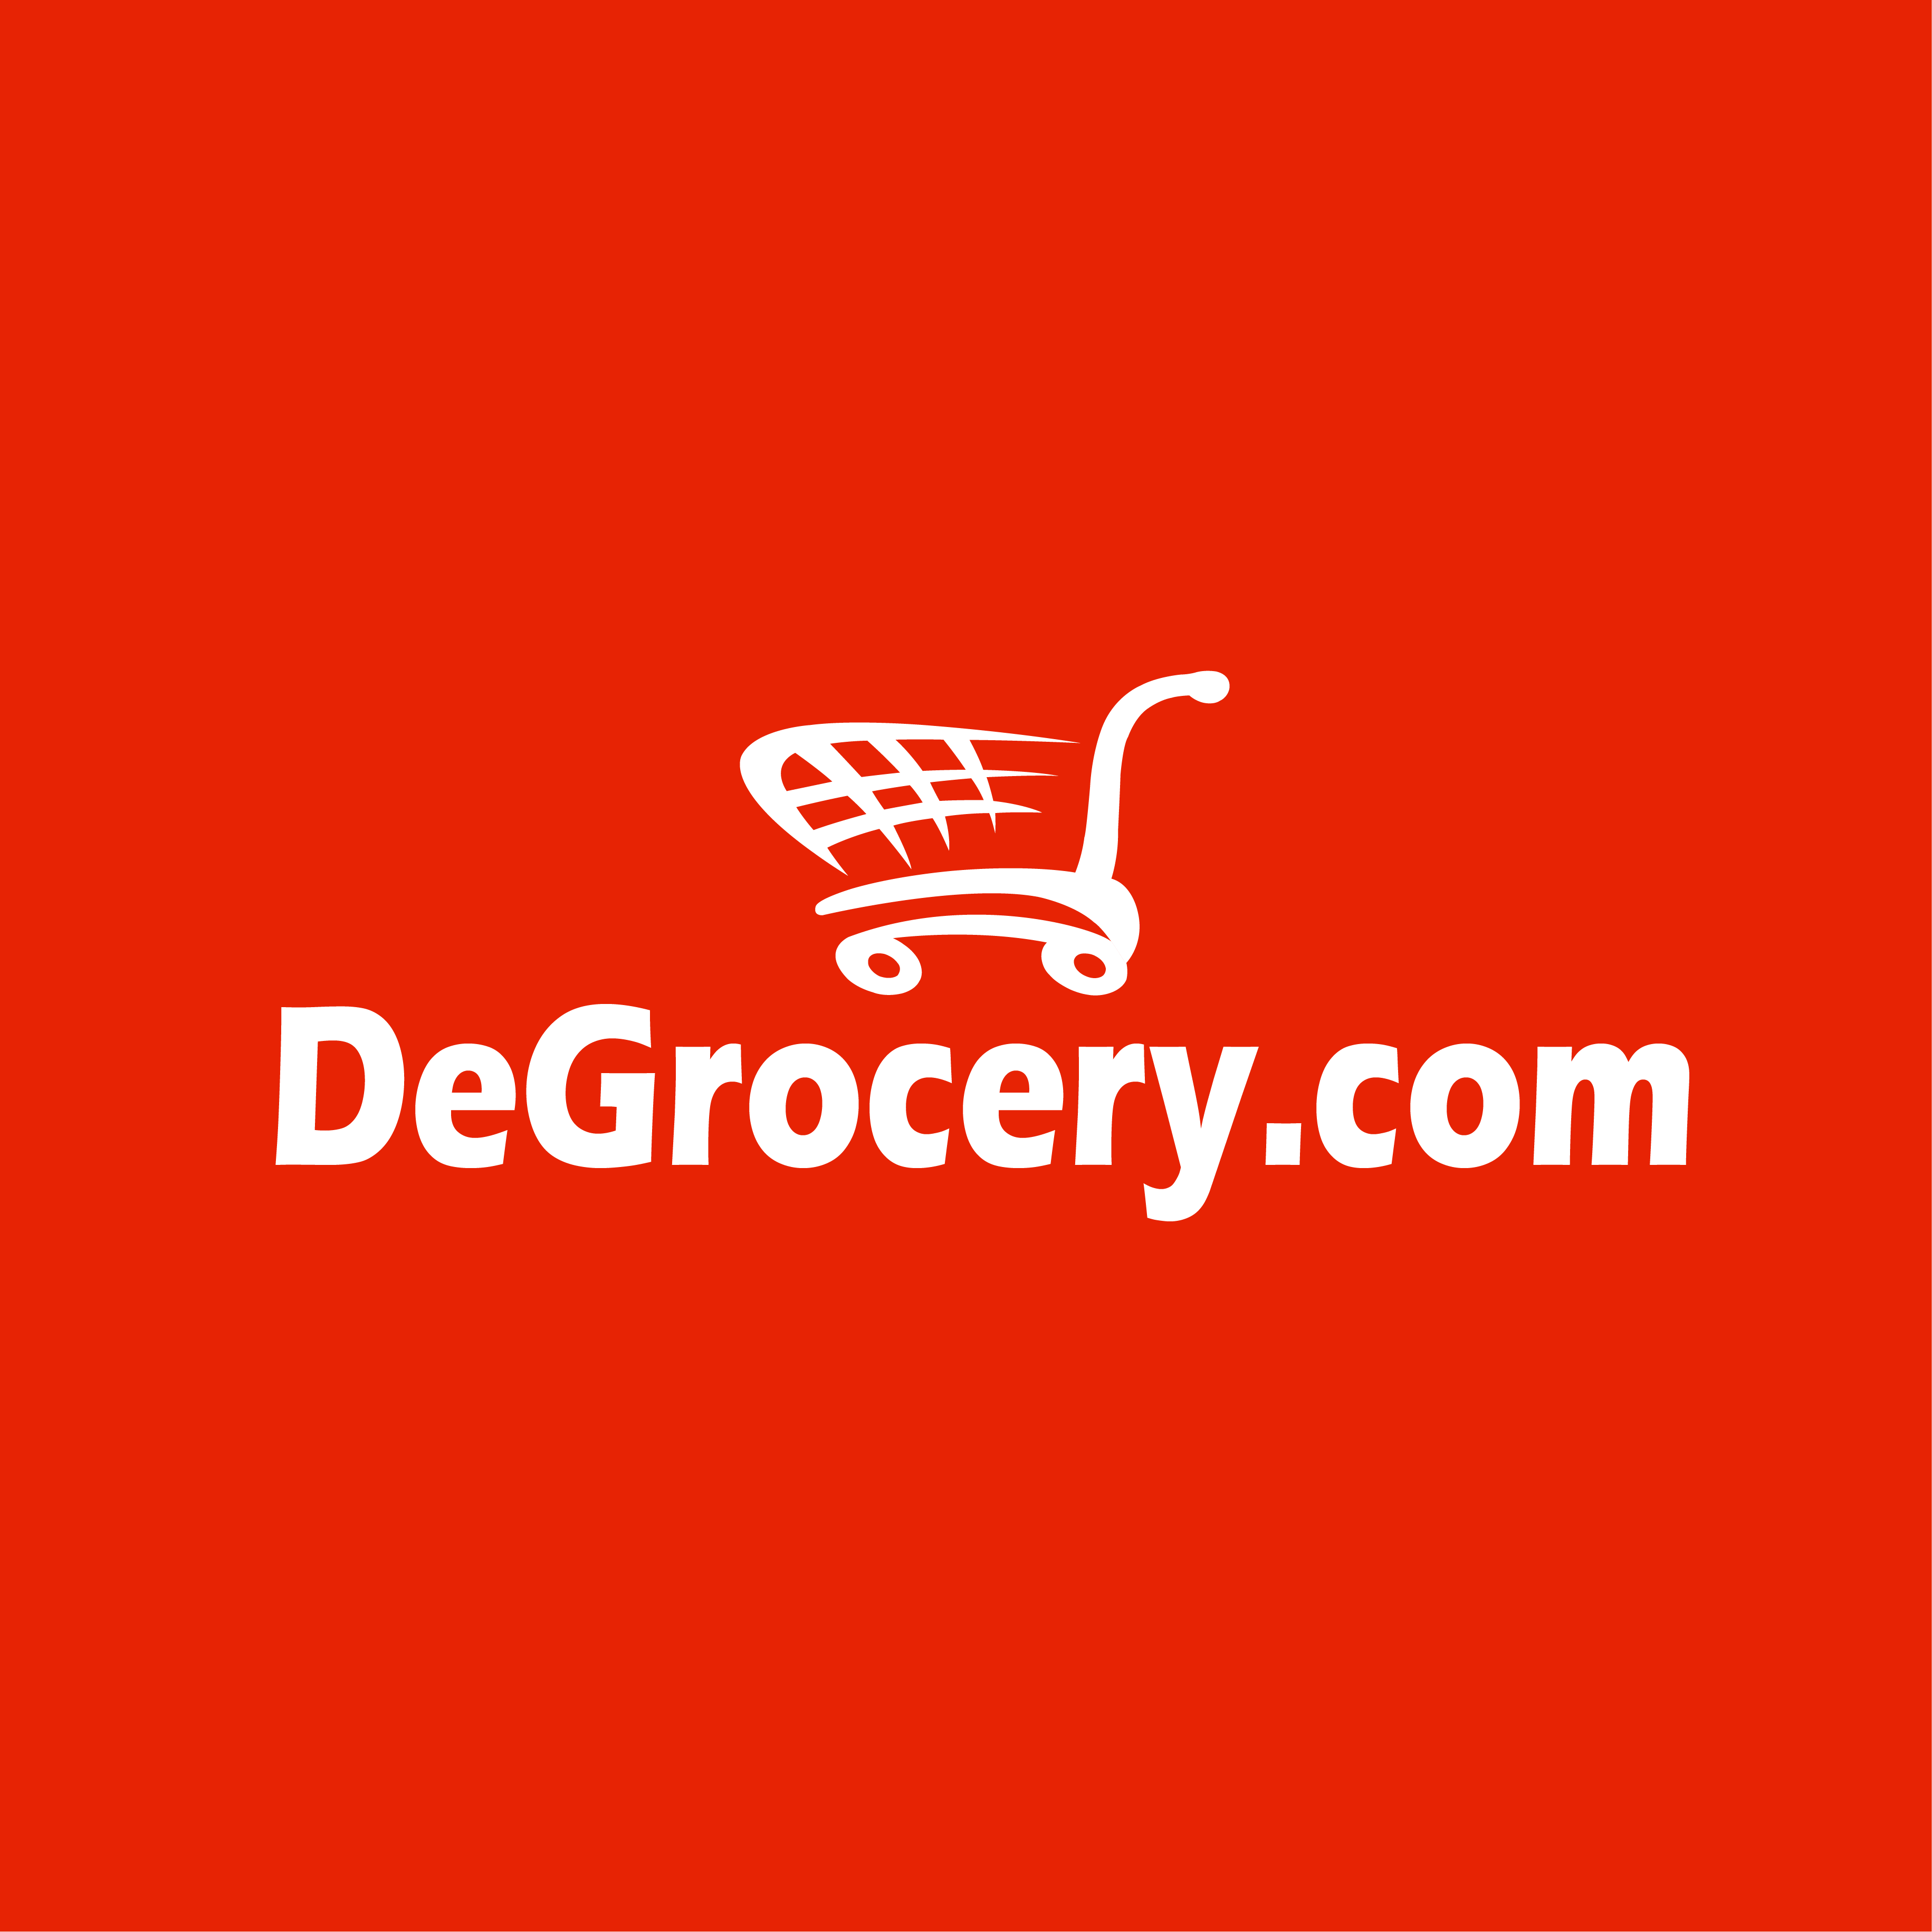 DeGrocery.com